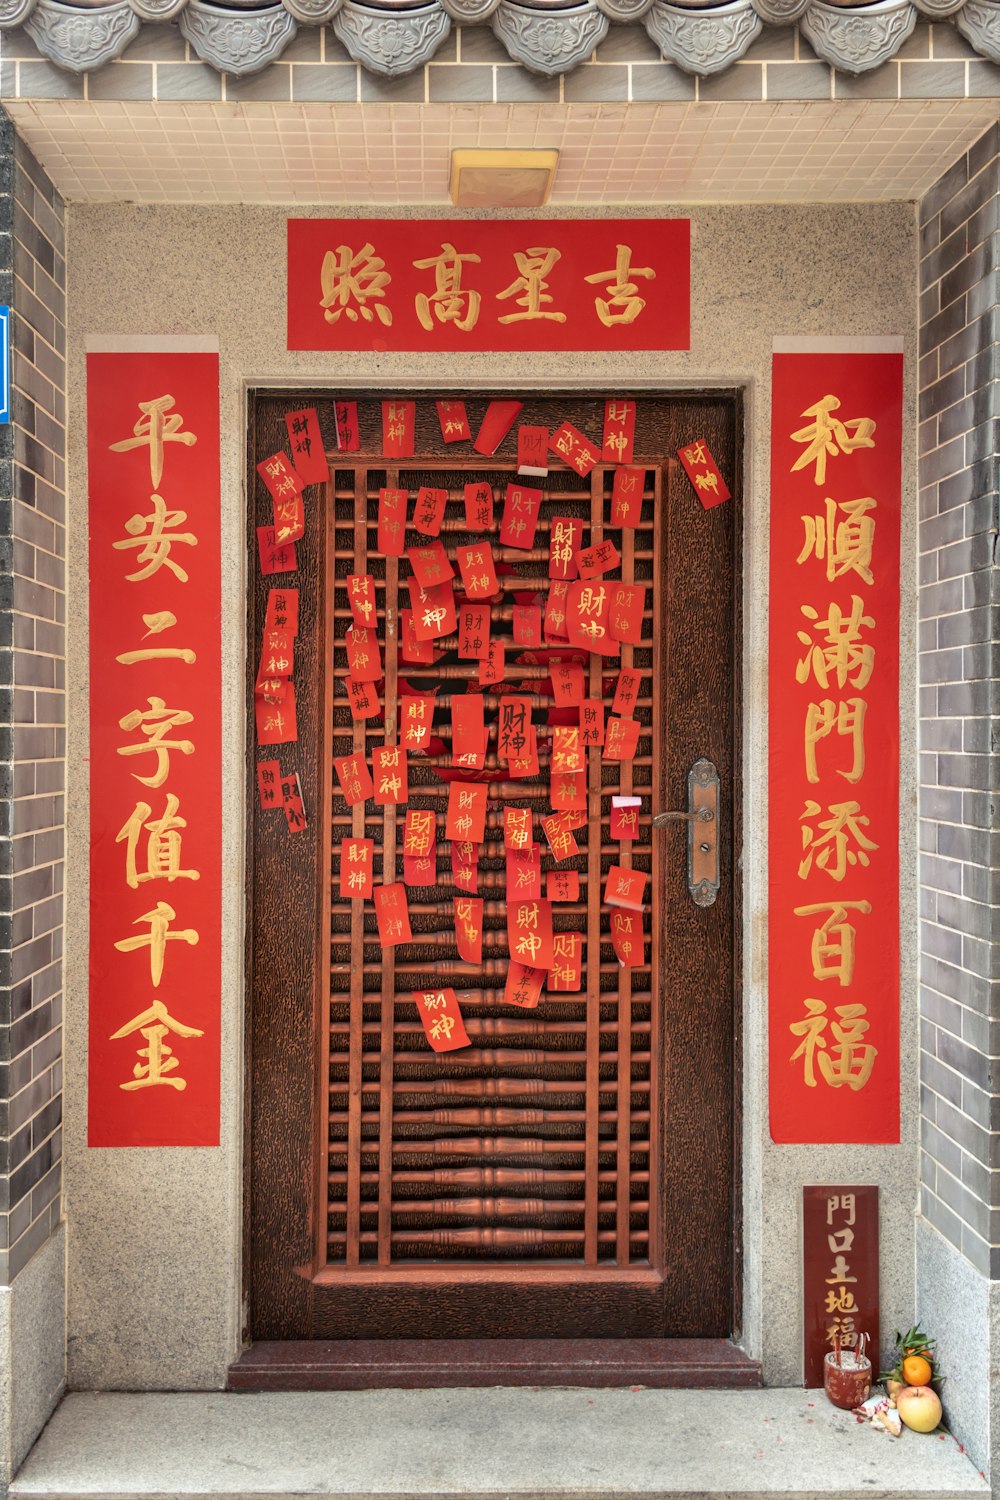 Eine Tür mit chinesischer Schrift vor einem Gebäude